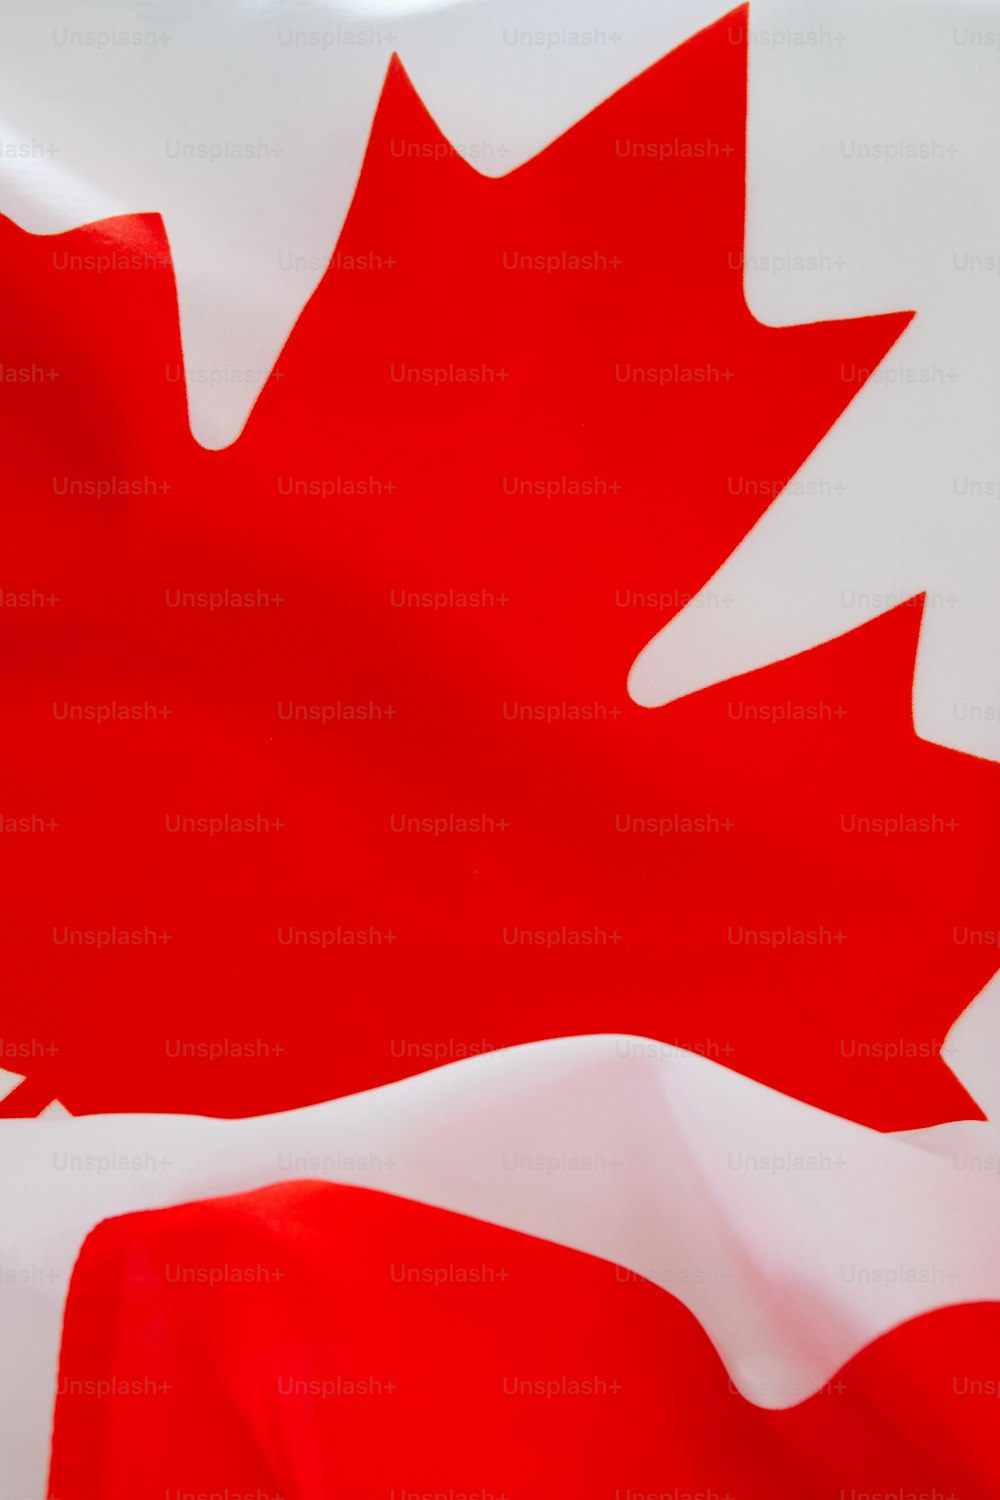 Una bandiera canadese con una foglia d'acero rossa su di essa